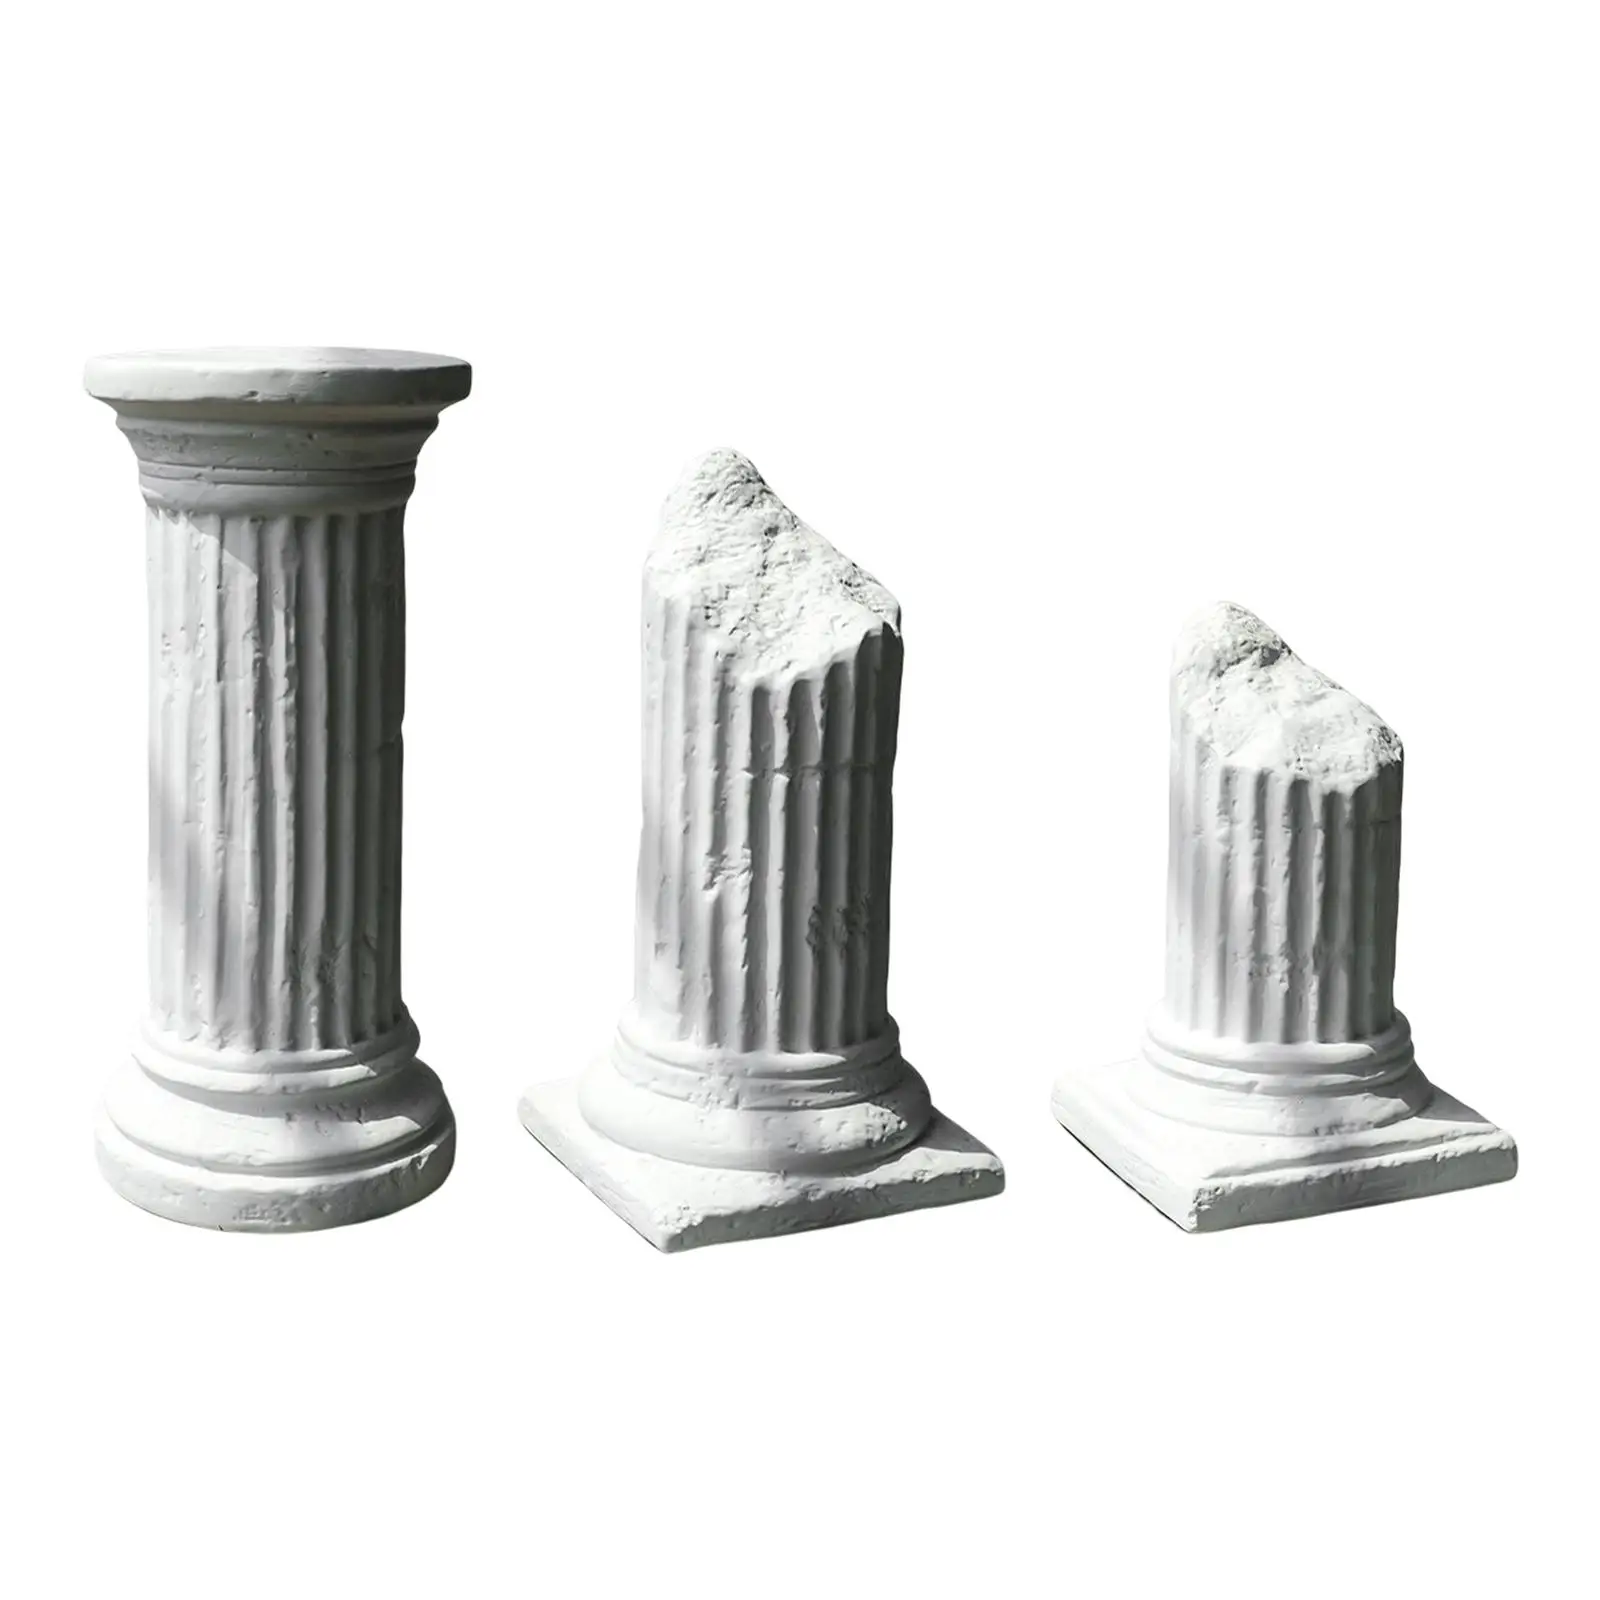 

Декоративная римская стойка, греческая колонна, креативный реквизит для фотосъемки в скандинавском стиле, римская колонна, статуя для помещений и улицы, декор для офиса